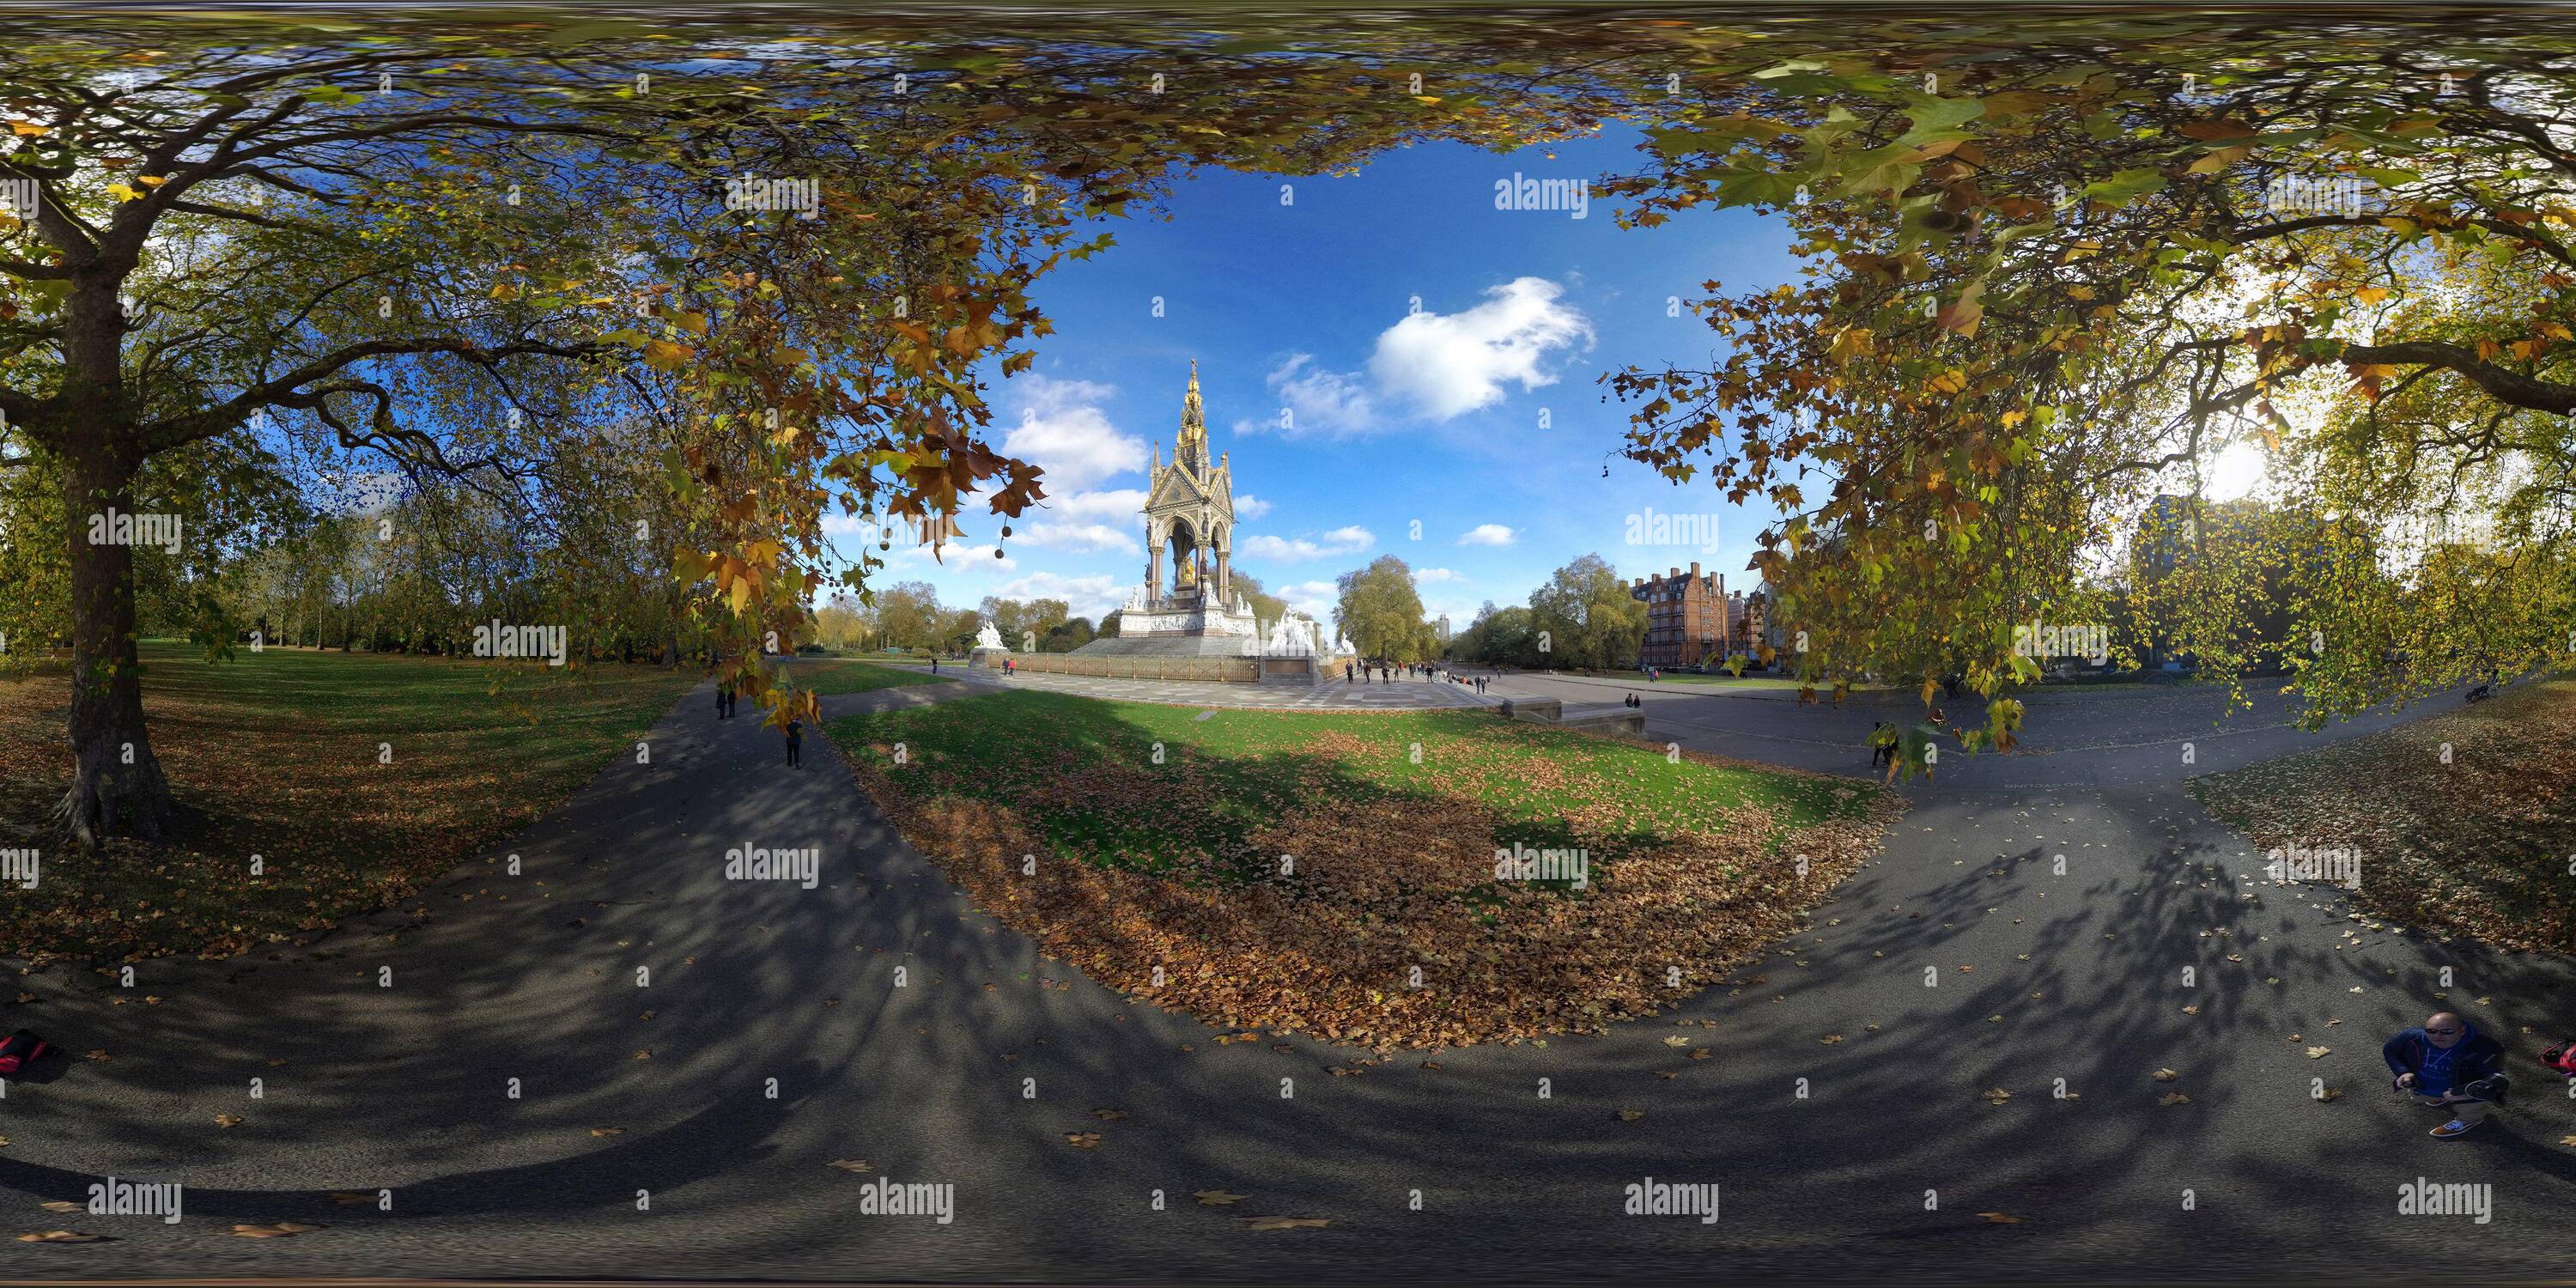 Visualizzazione panoramica a 360 gradi di L'ALBERT MEMORIAL A LONDRA IMMAGINE DI CREDITO: MARK PAIN / ALAMY IMMAGINE STOCK